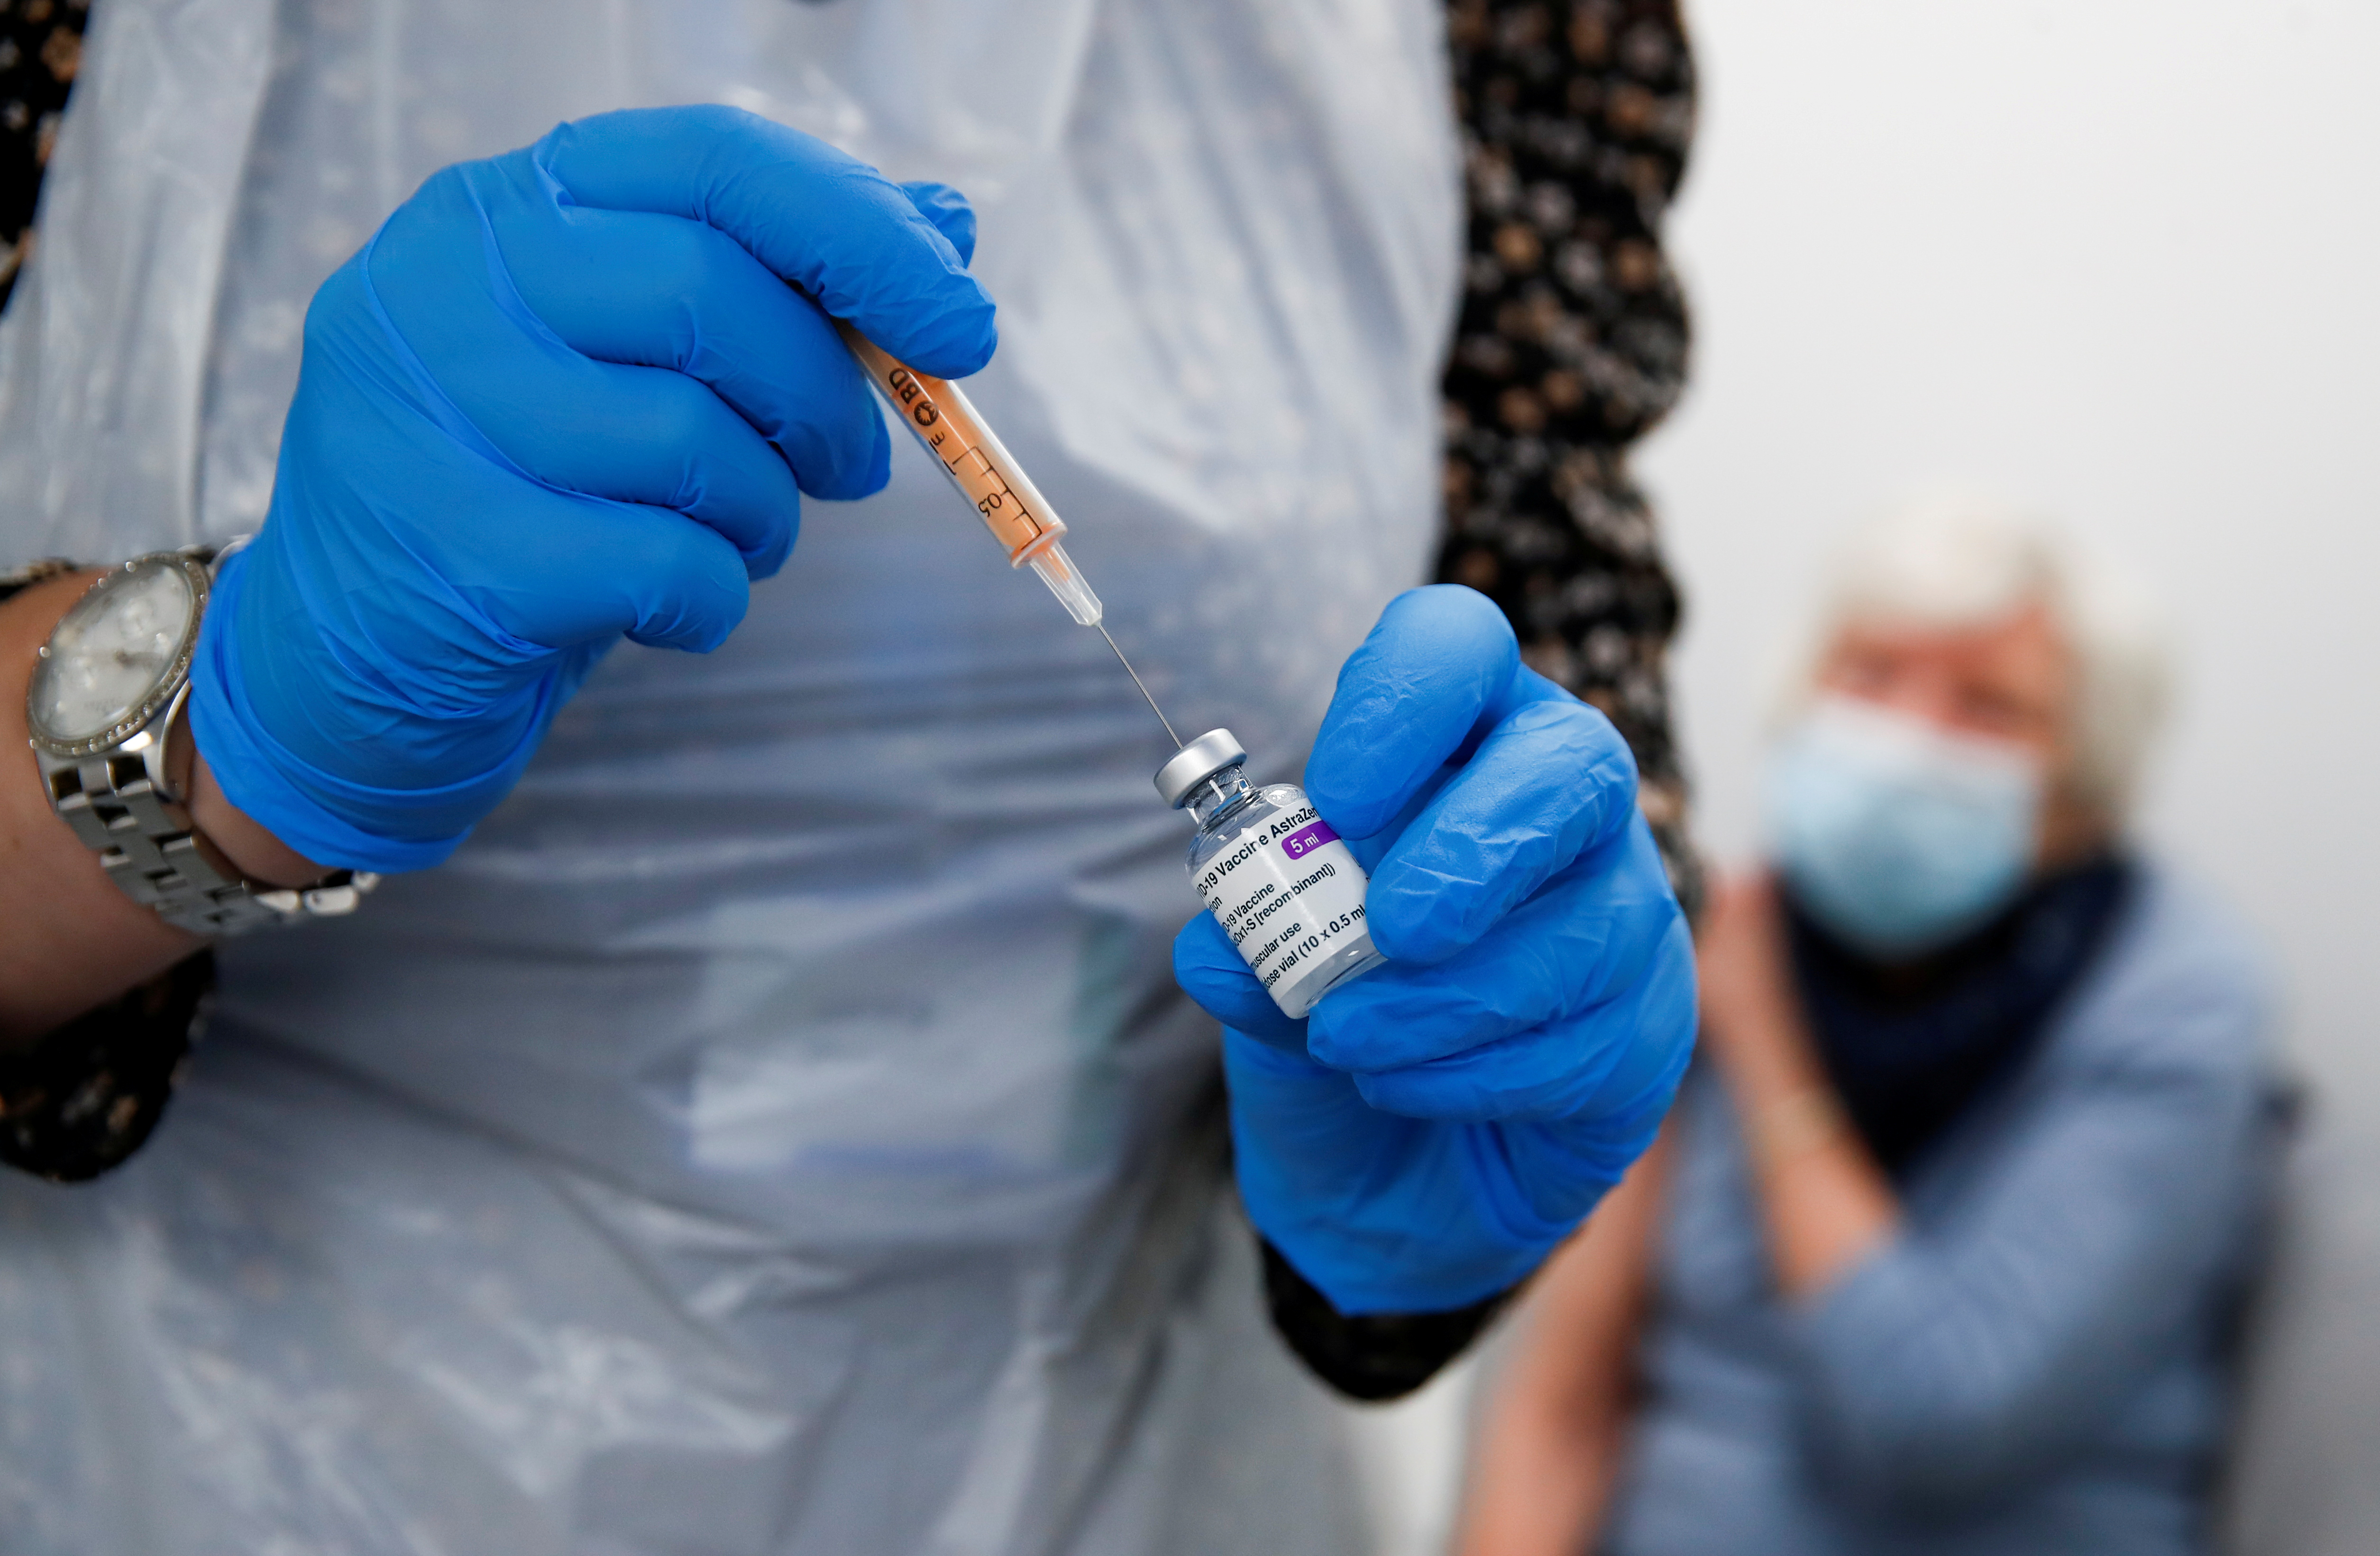 La OMS recomienda seguir vacunando con AstraZeneca “por el momento”